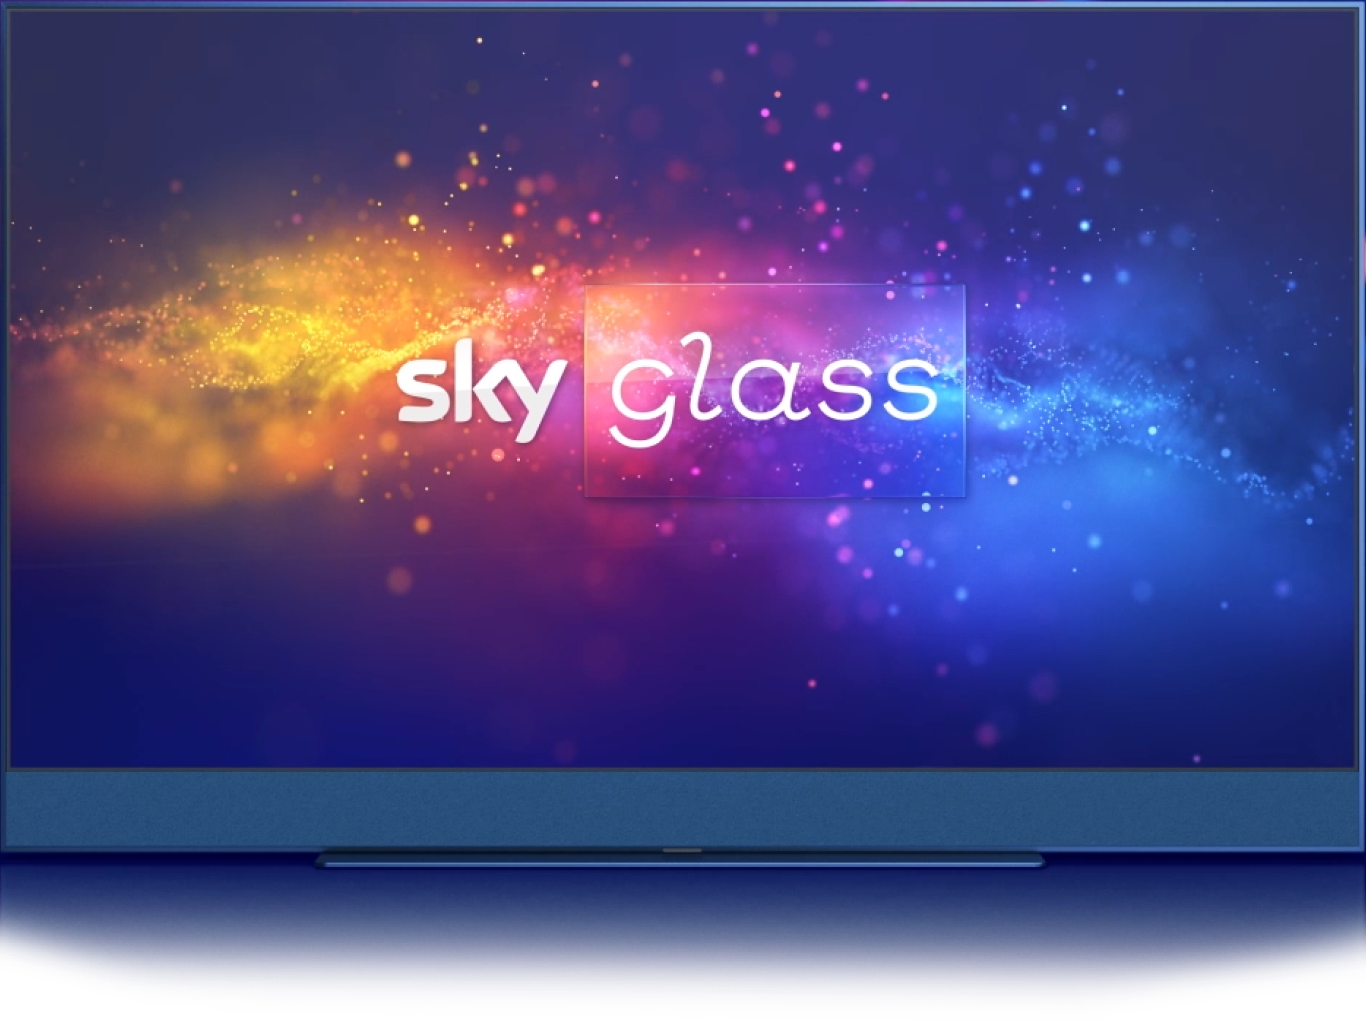 sky glass tv